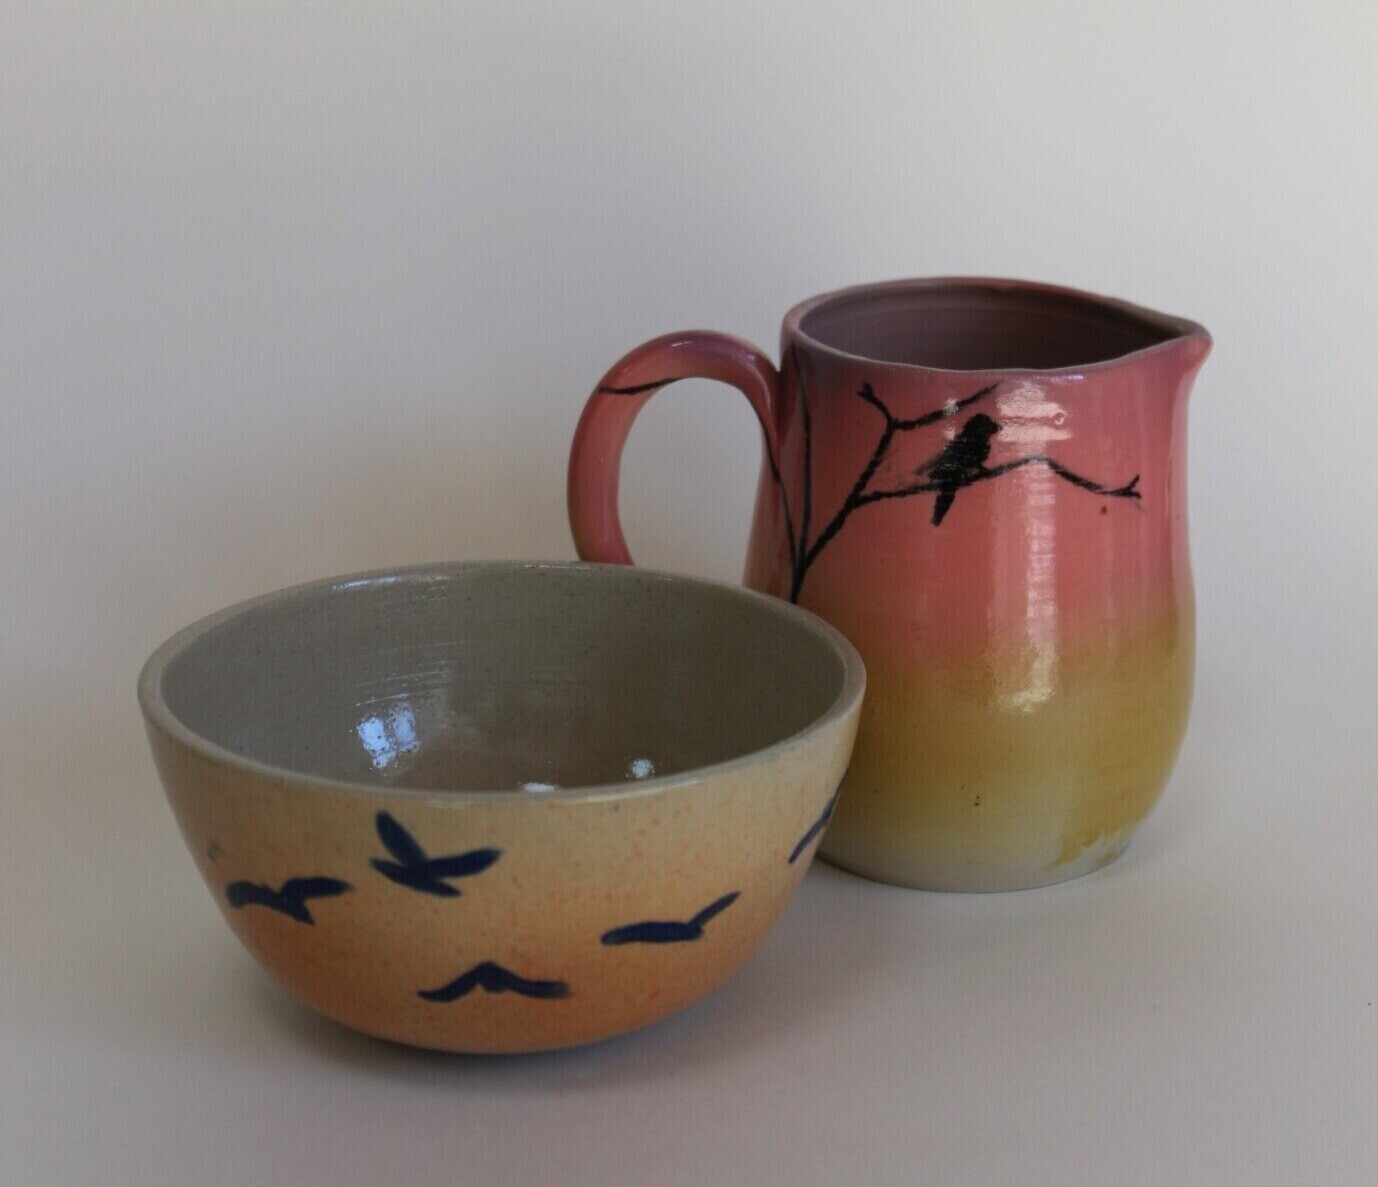 Bols et tasses bleues en céramique par Andrea Mustiga